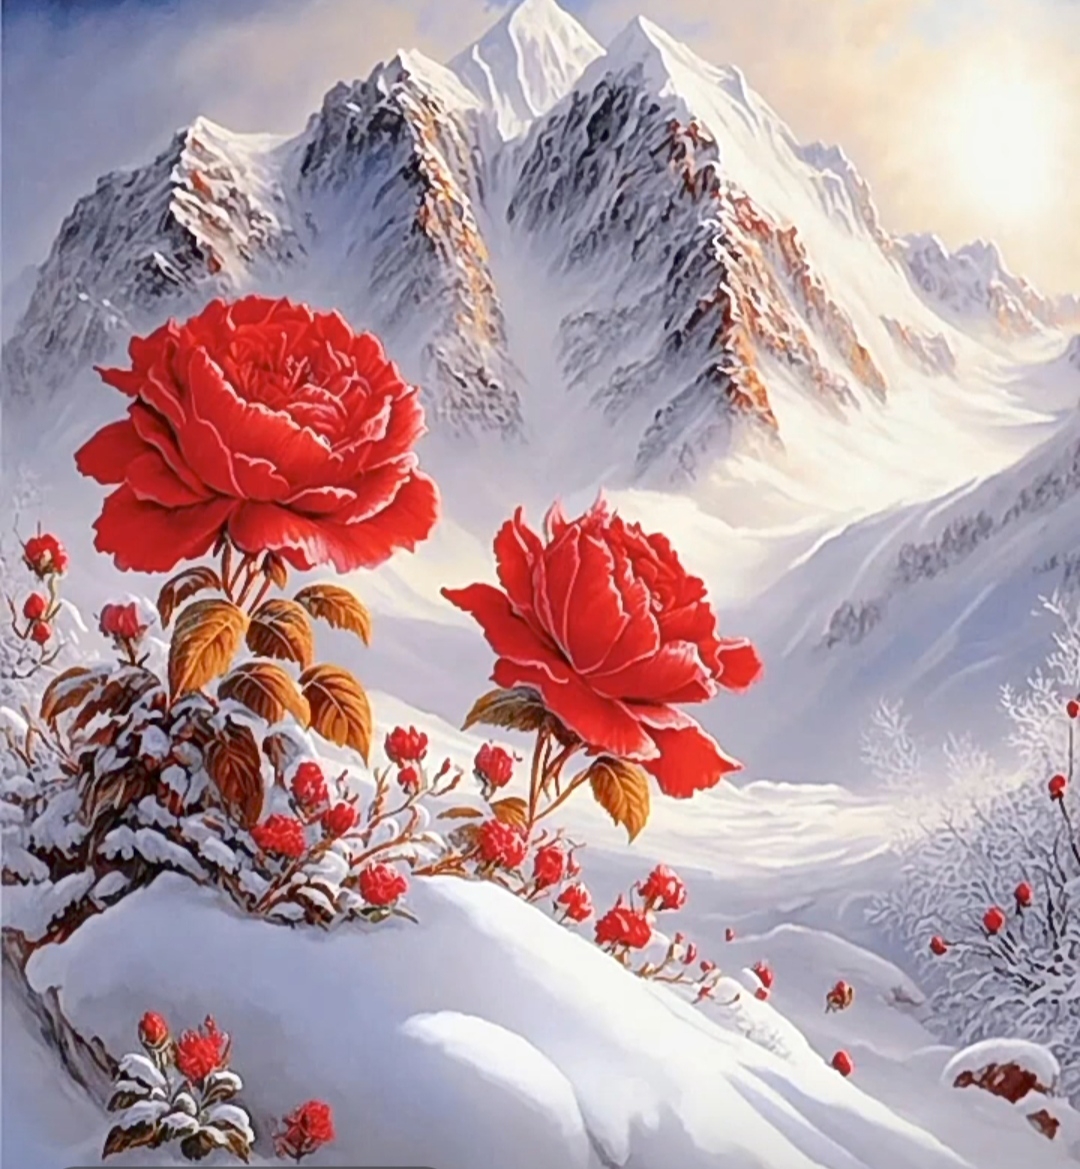 雪中玫瑰  坚强不屈  闪耀绽放